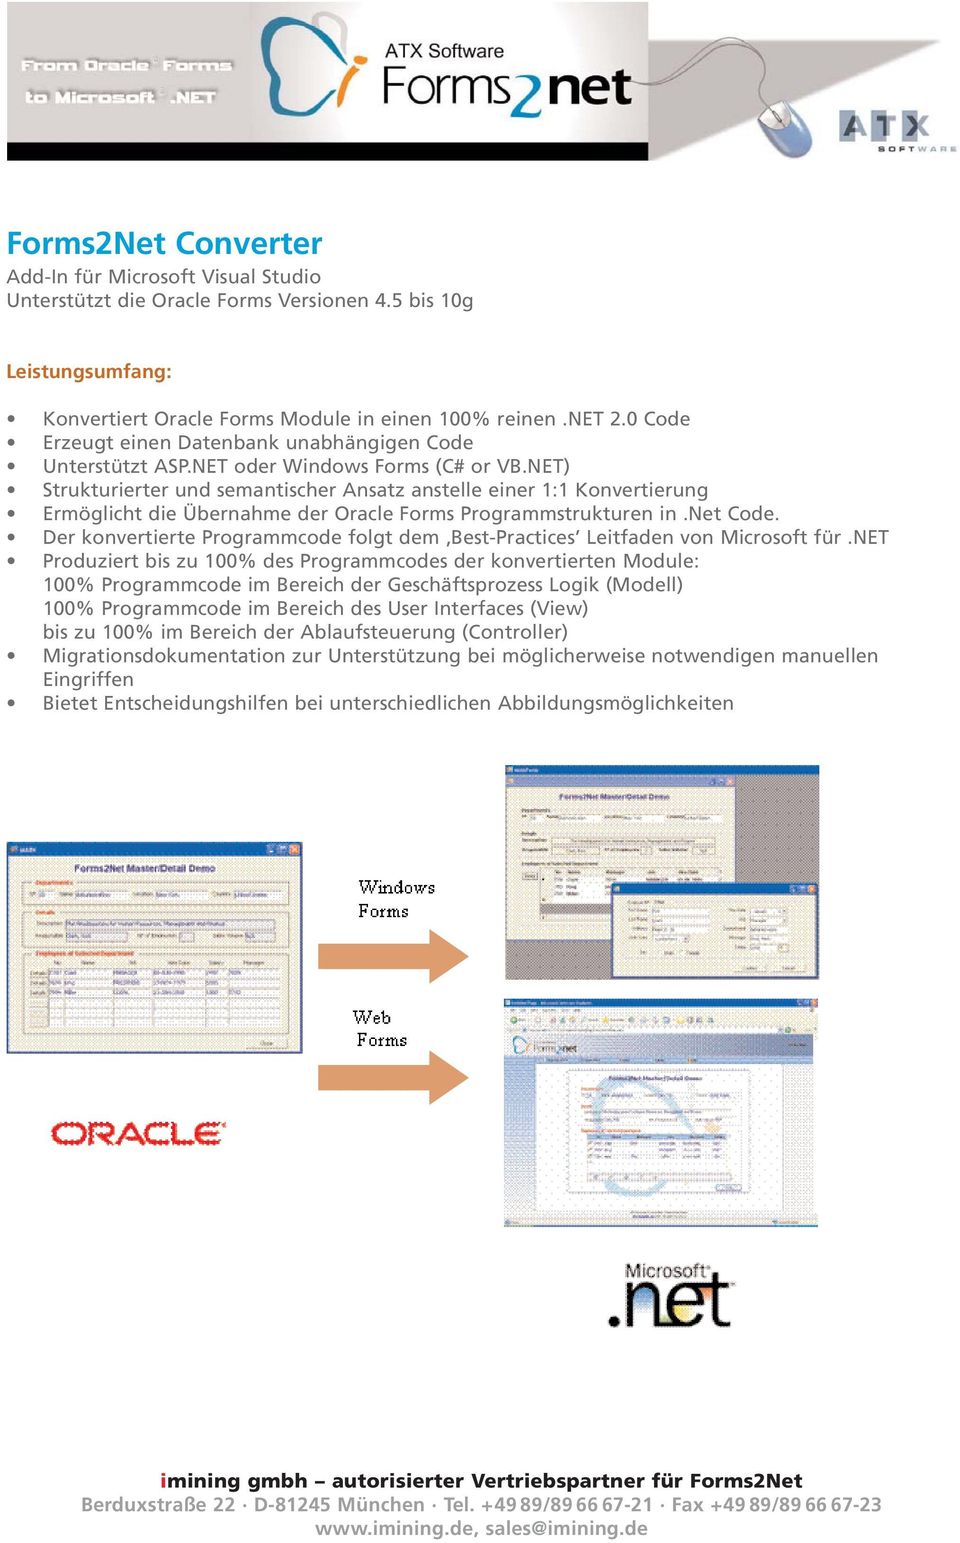 NET) Strukturierter und semantischer Ansatz anstelle einer 1:1 Konvertierung Ermöglicht die Übernahme der Oracle Forms Programmstrukturen in.net Code.